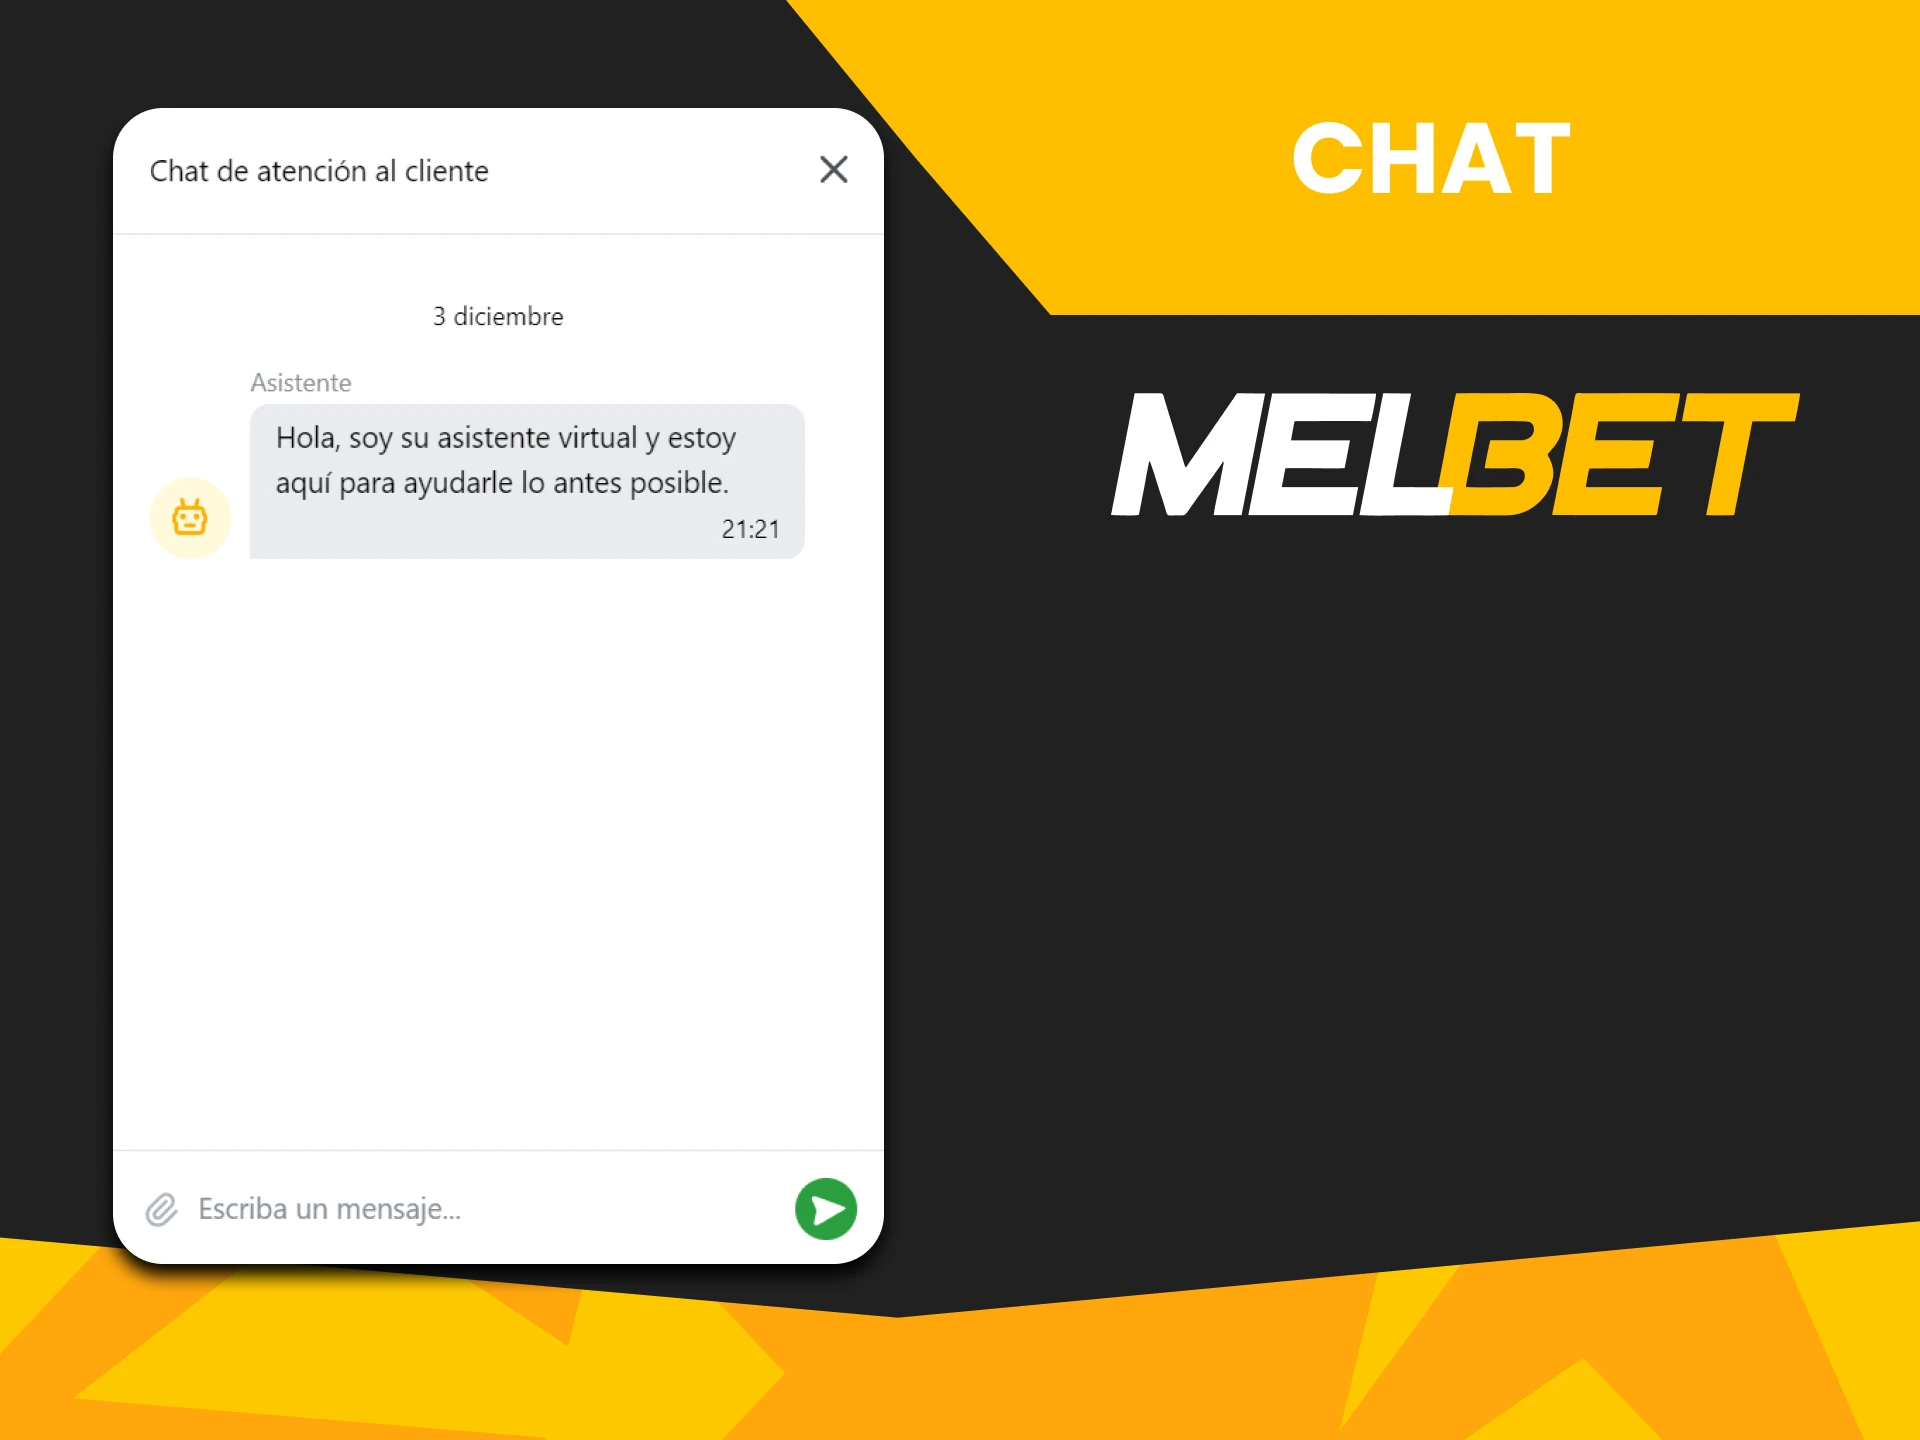 Puedes contactar con el equipo de Melbet a través del chat.